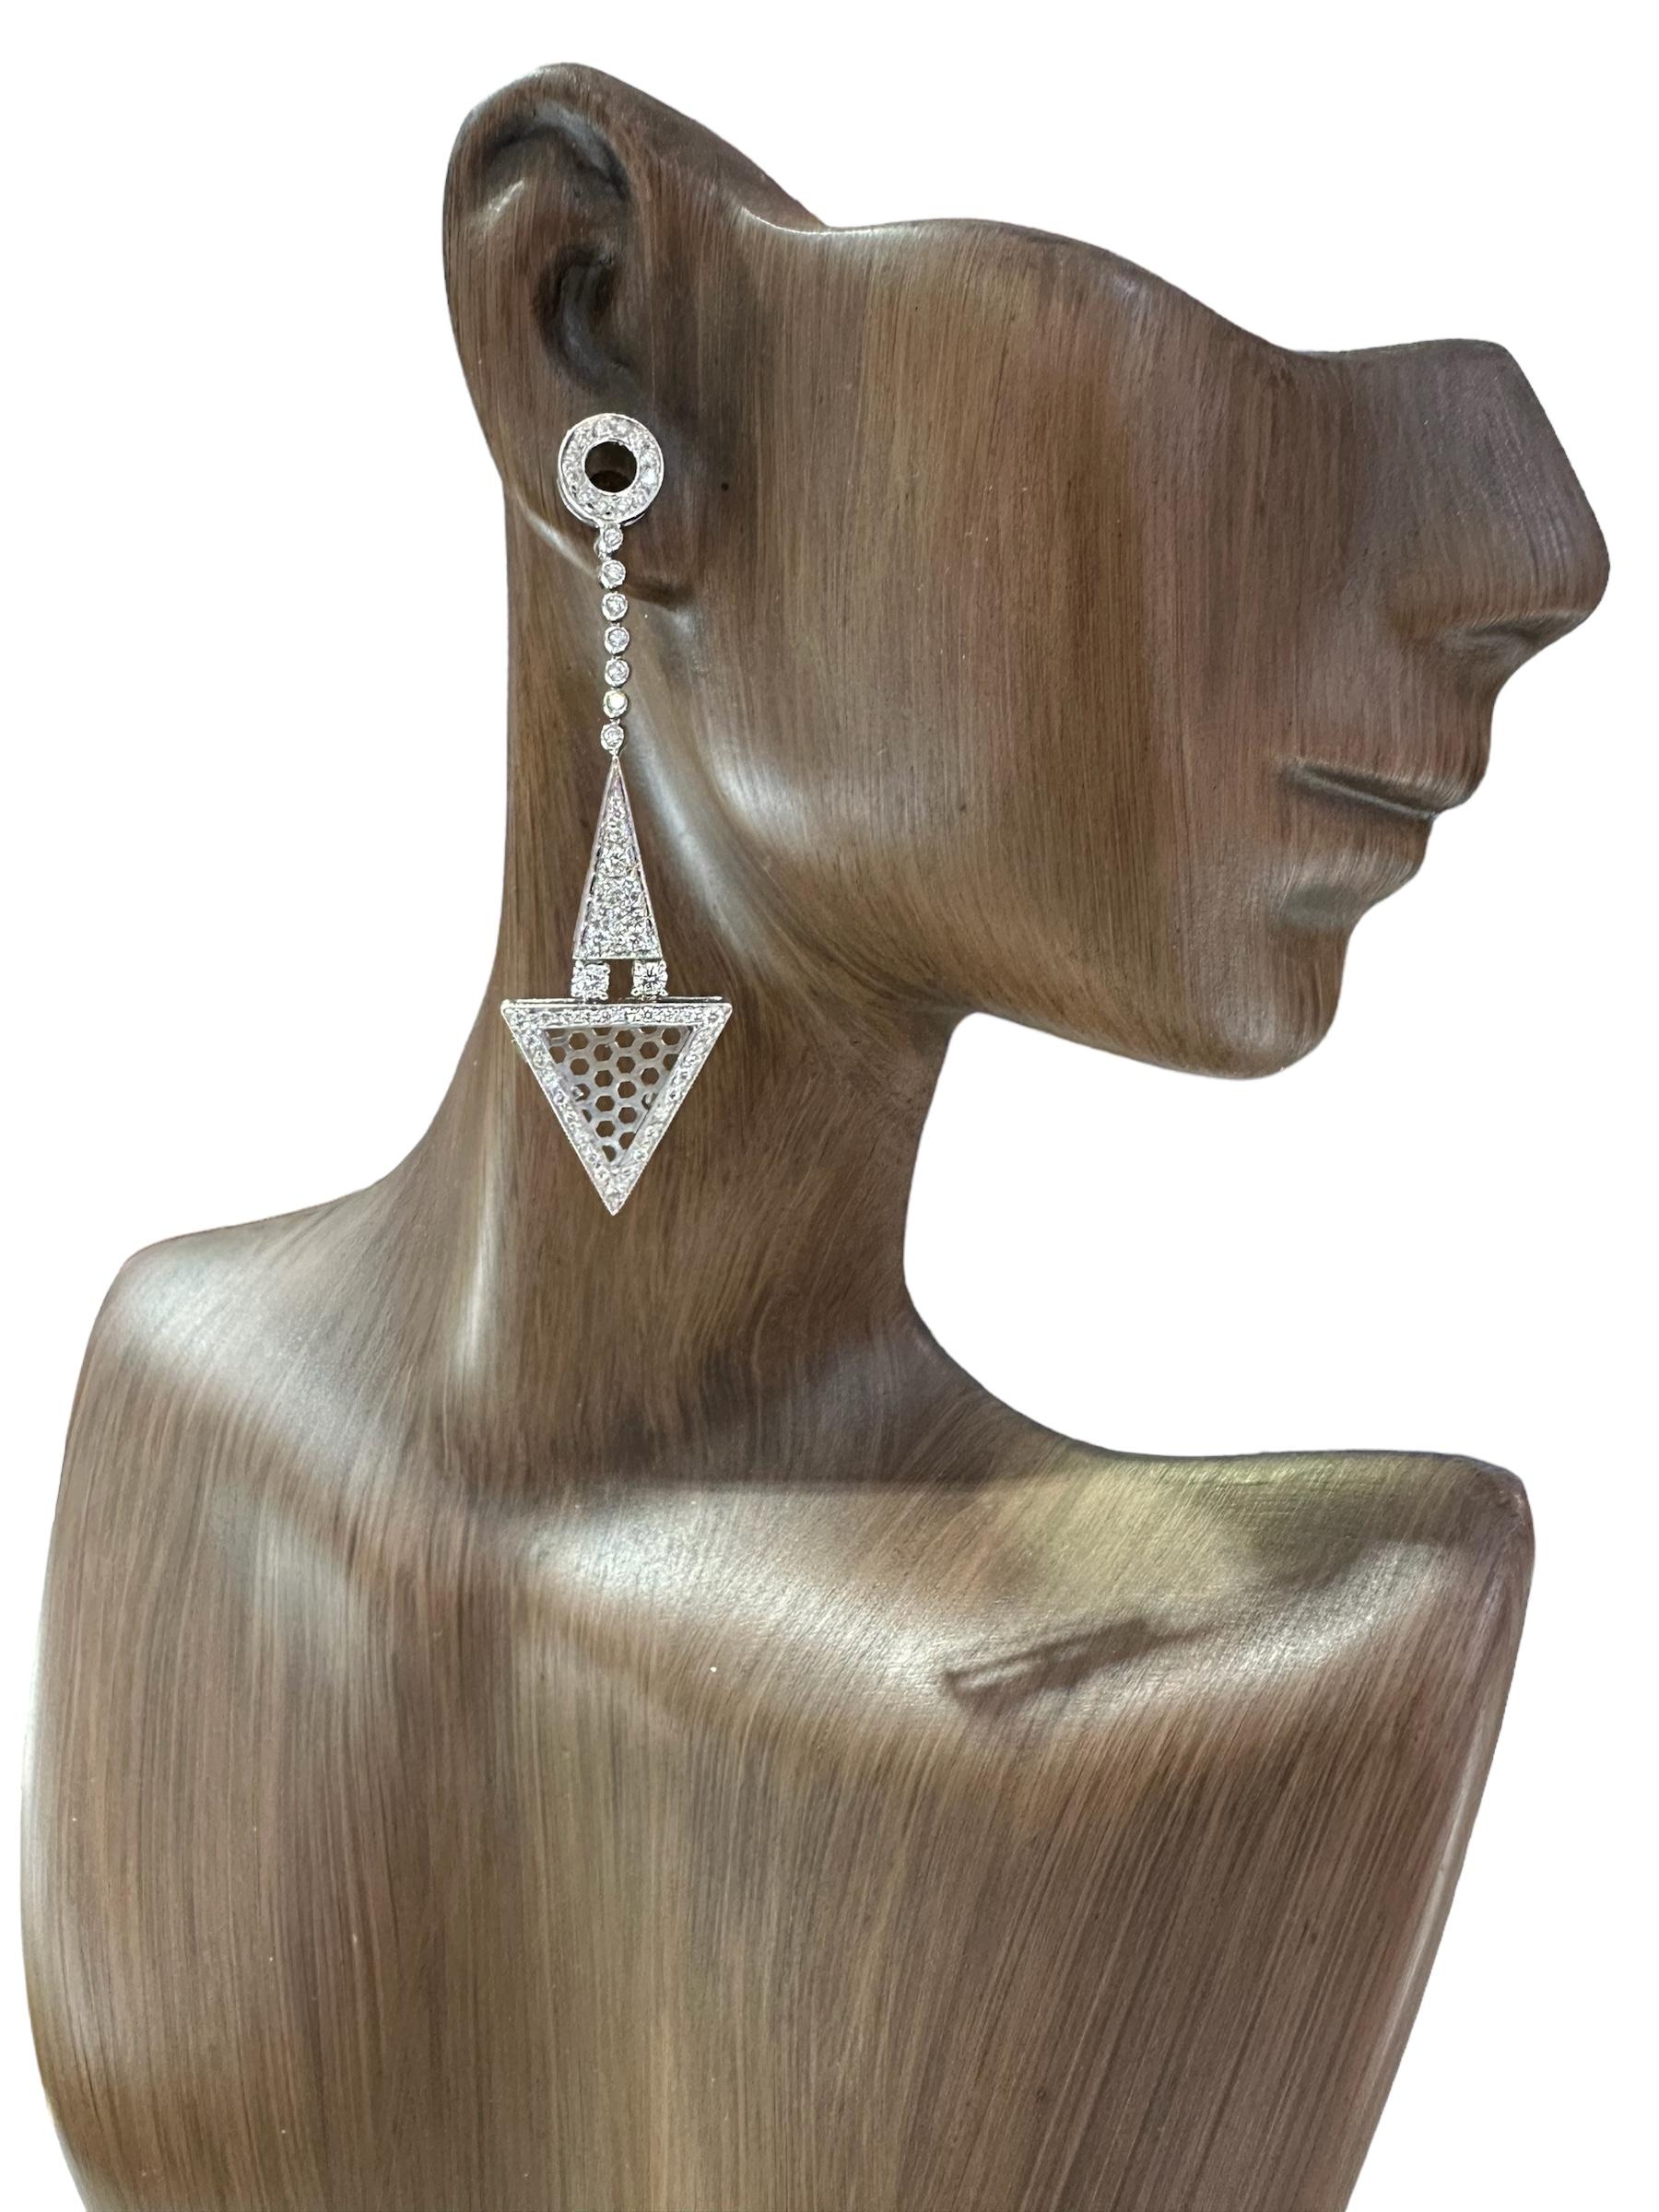 Échappez à l'ordinaire avec ces boucles d'oreilles en diamant au style audacieux et magnifique proposées par Alex & Co. Ces boucles d'oreilles en or blanc 18 carats et diamants sont illuminées par un pavage de 116 diamants blancs totalisant environ